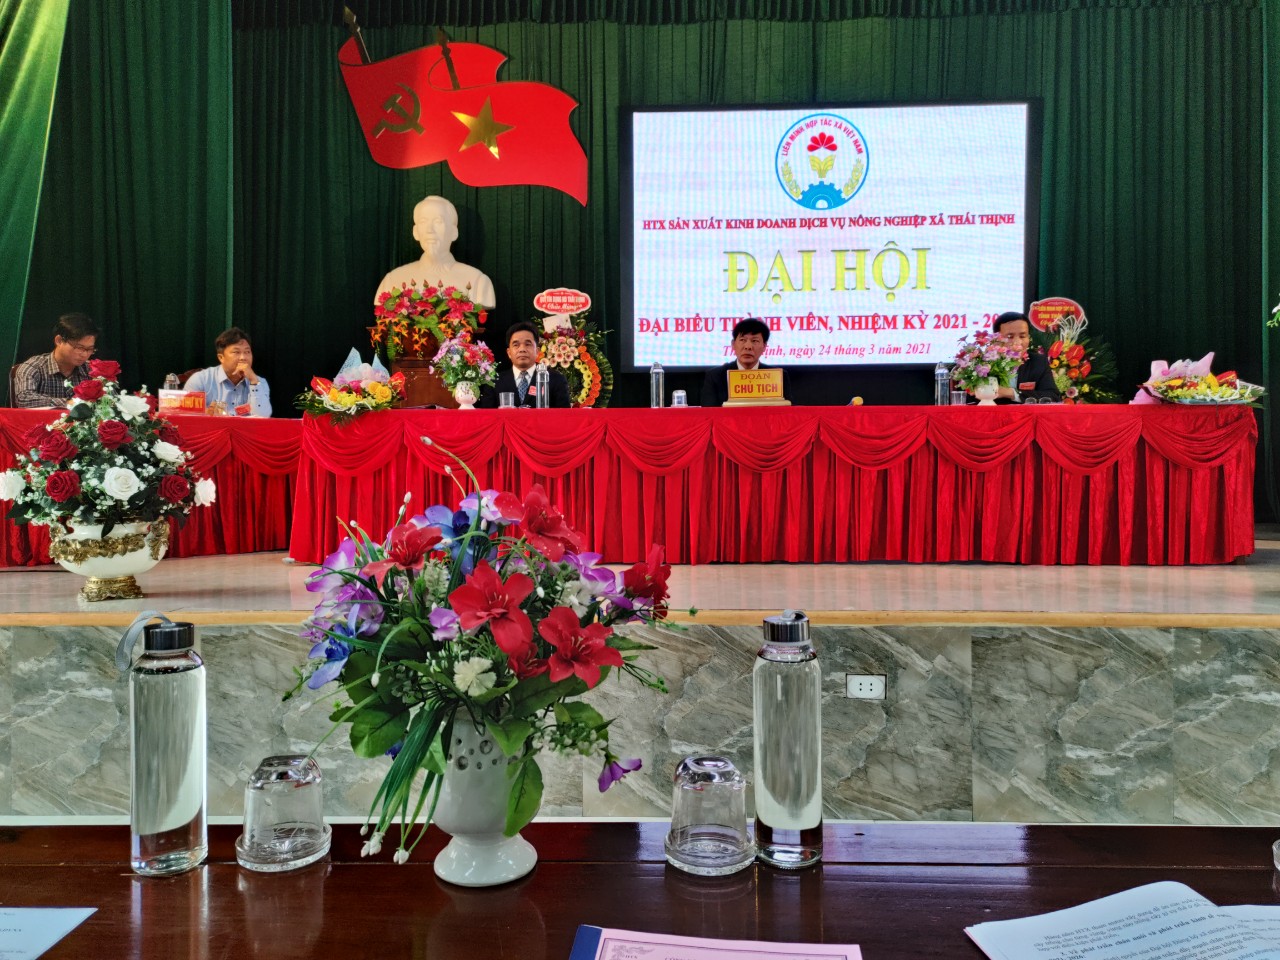 Hợp tác xã sản xuất kinh doanh dịch vụ nông nghiệp Thái Thịnh tổ chức Đại hội nhiệm kỳ 2021 - 2026